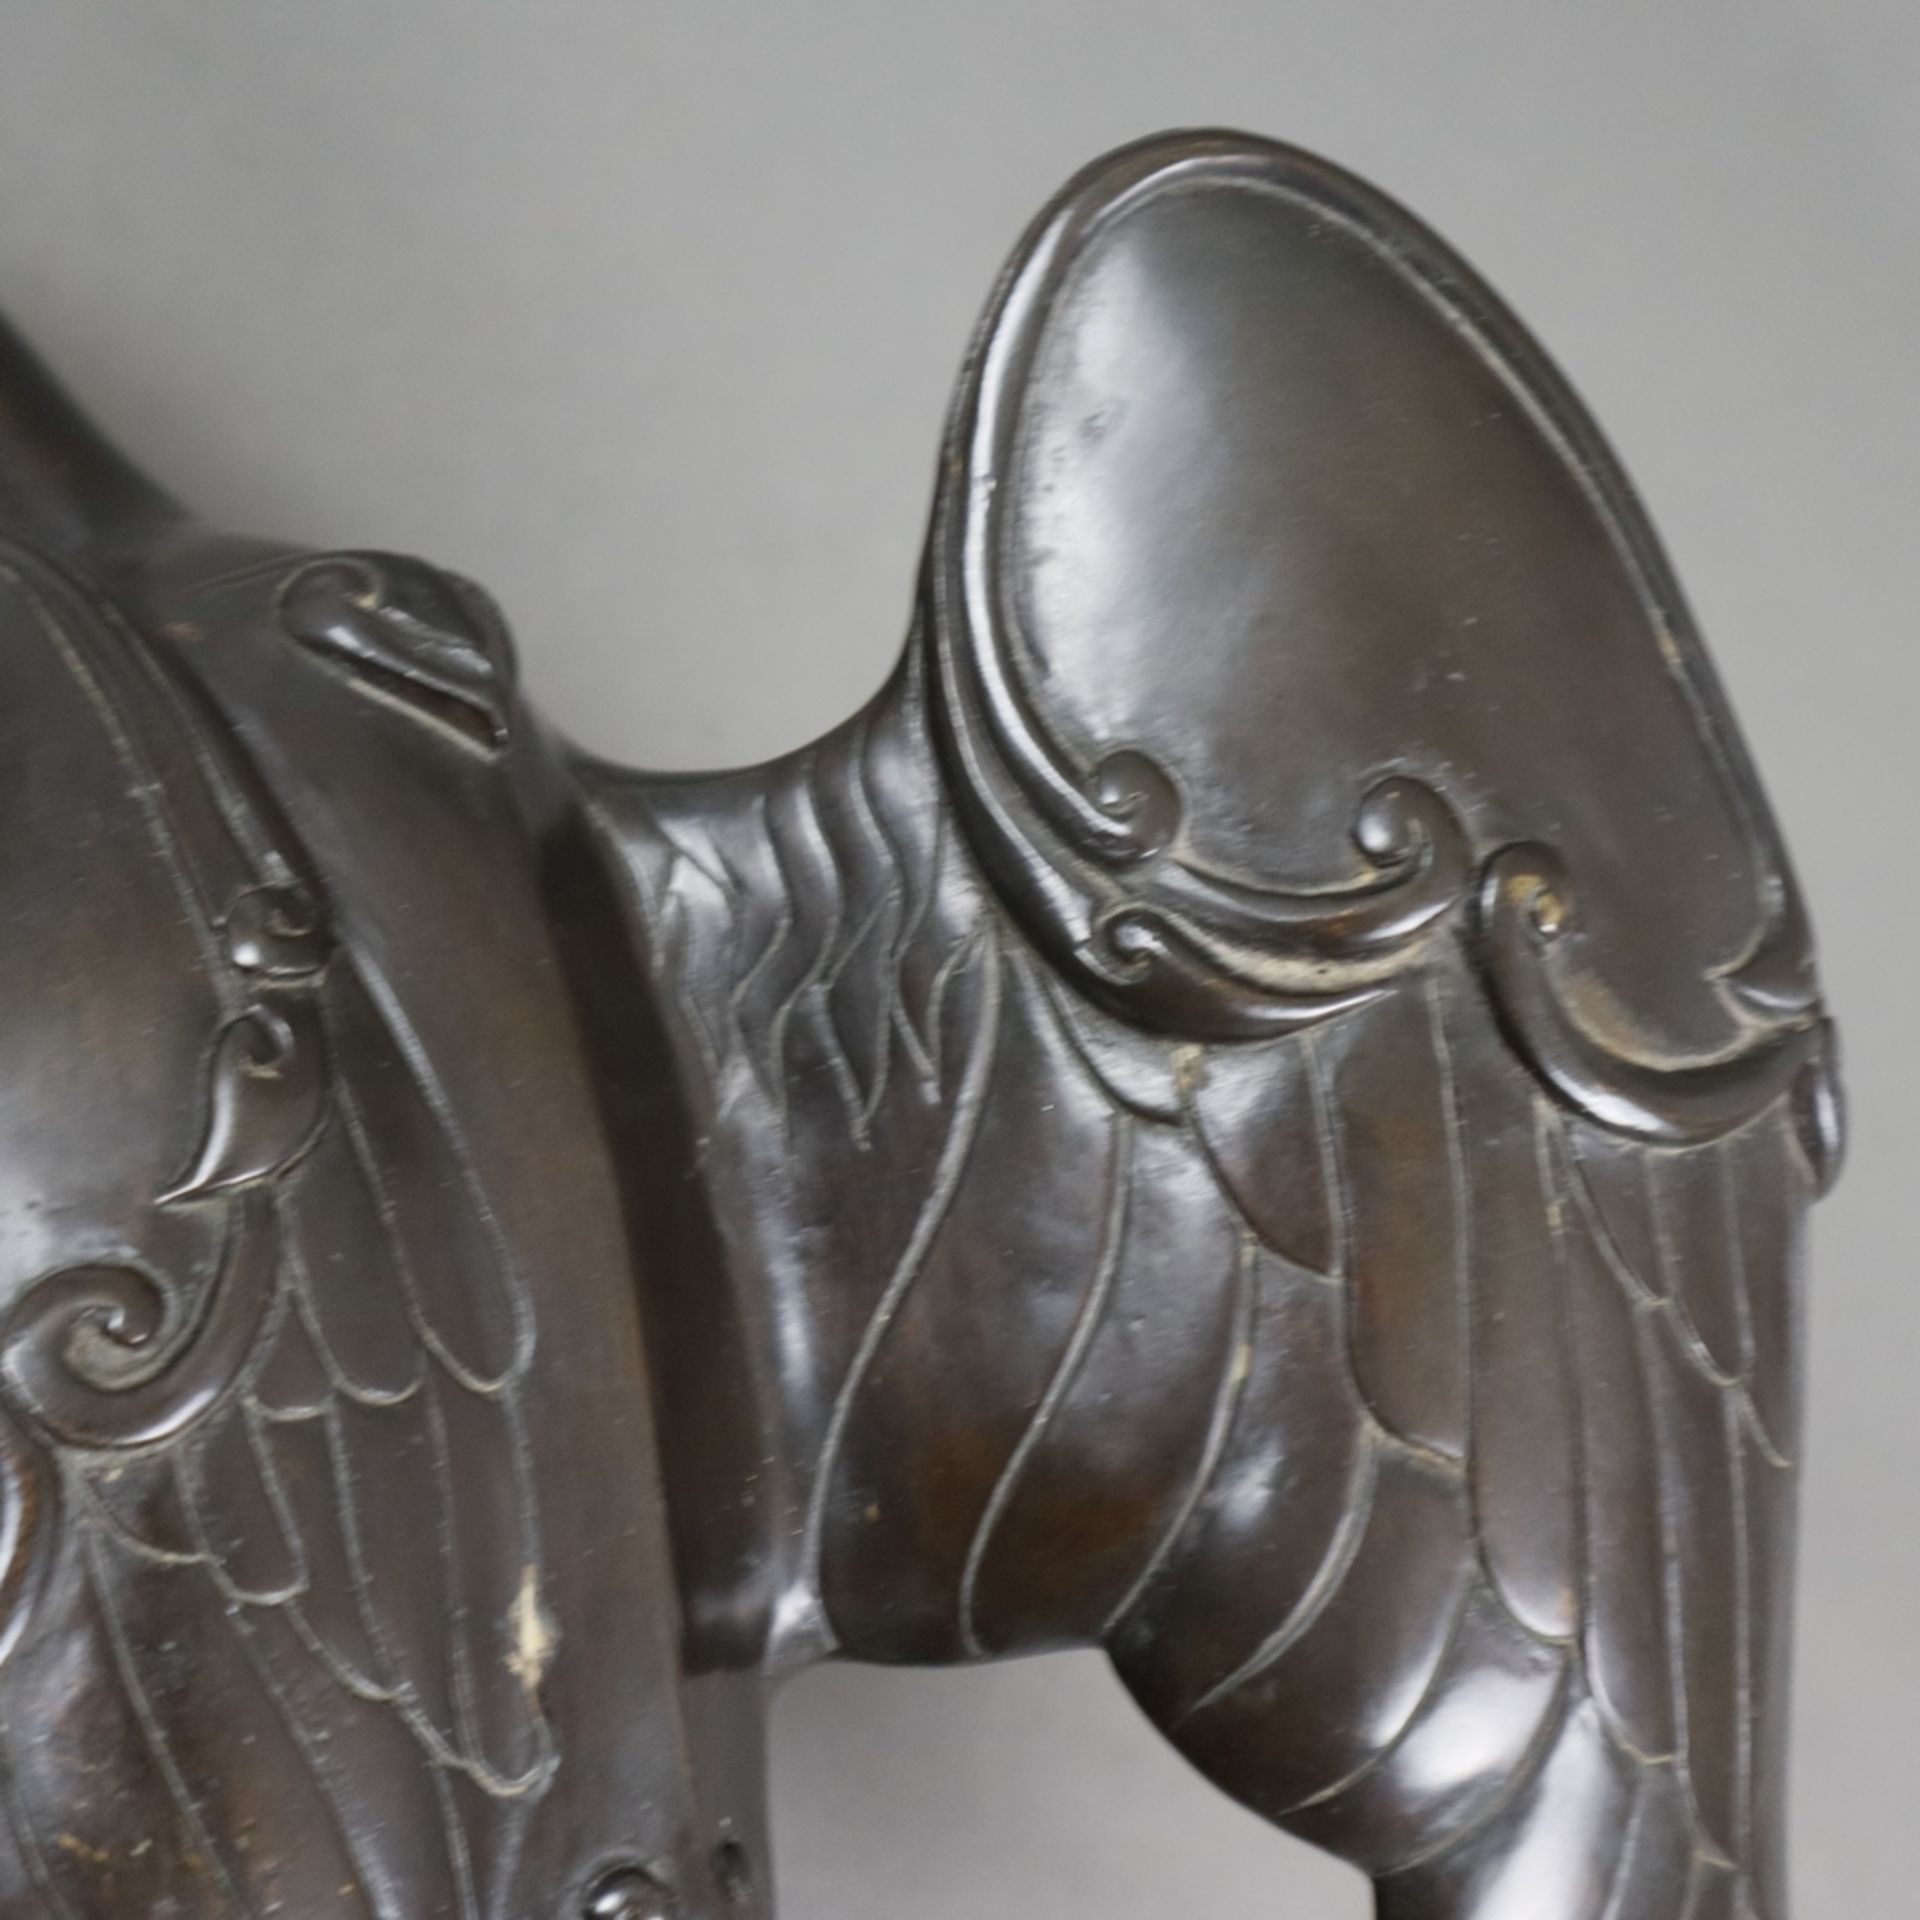 Tierfigur "Ente" - Messingguss, bronziert, unterseitig gestempelt "Santi's" mit Auflagenr. 11/5000, - Image 7 of 10